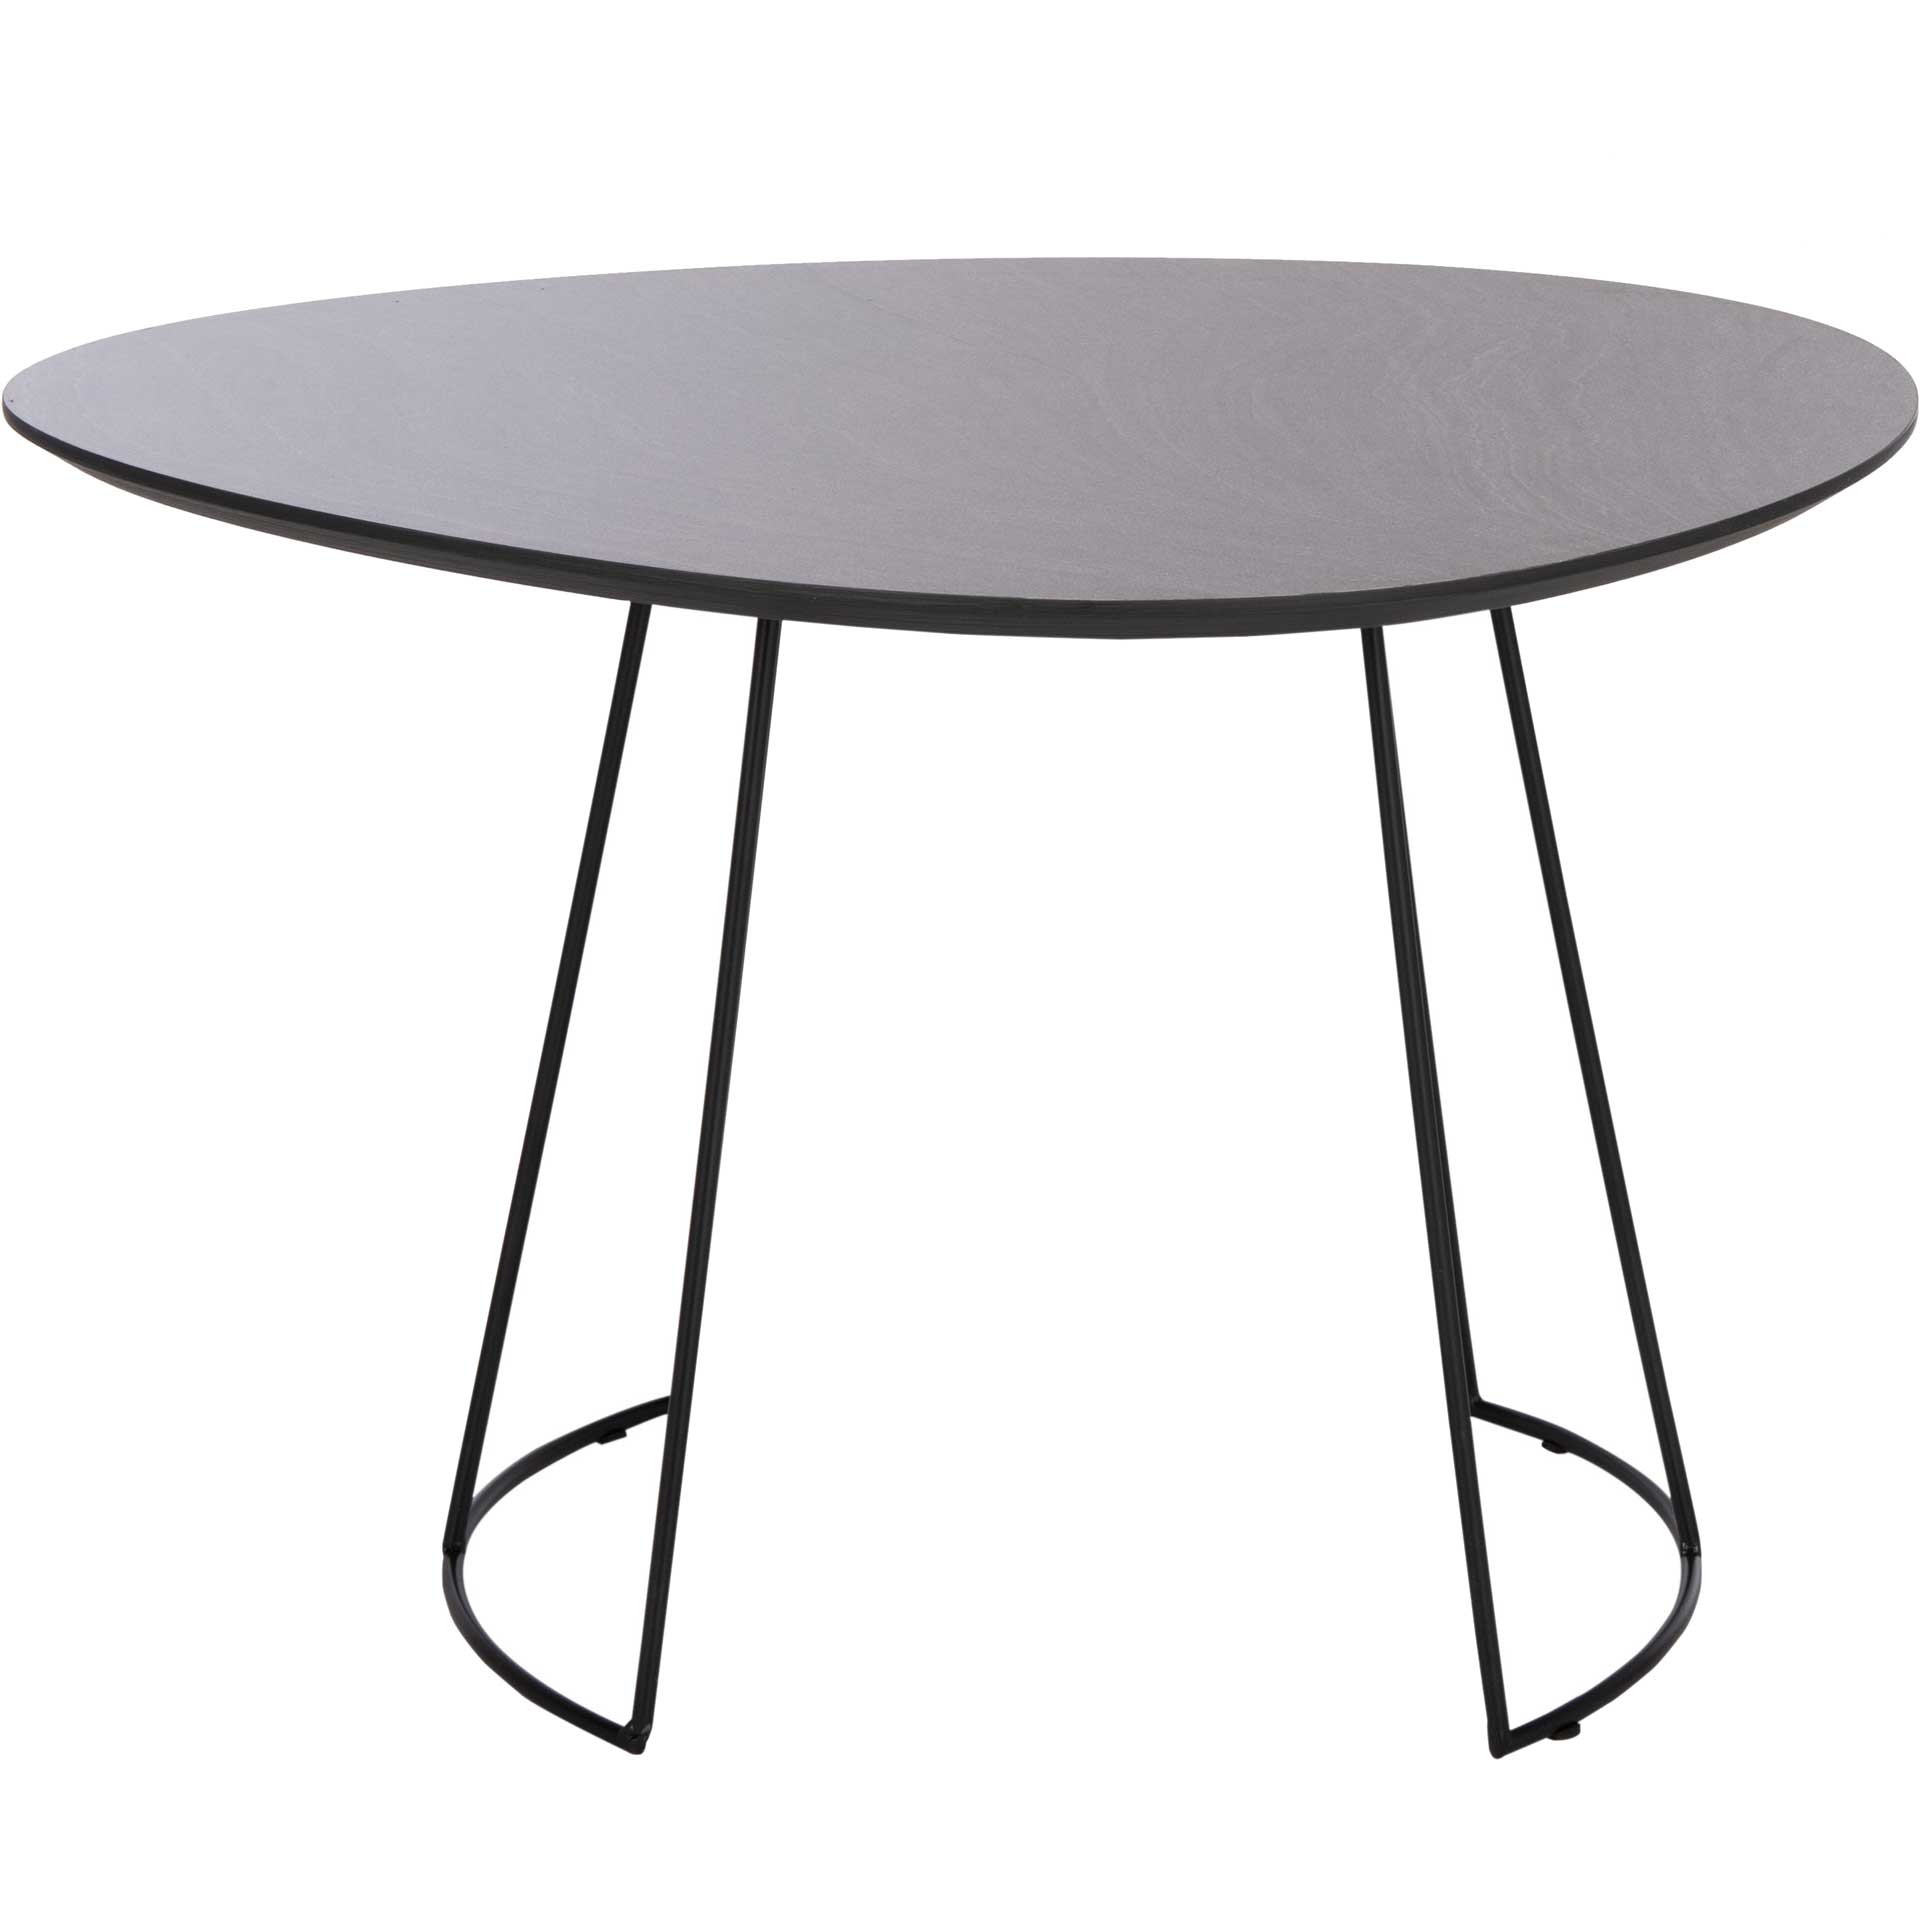 Bria Side Table Dark Gray/Black